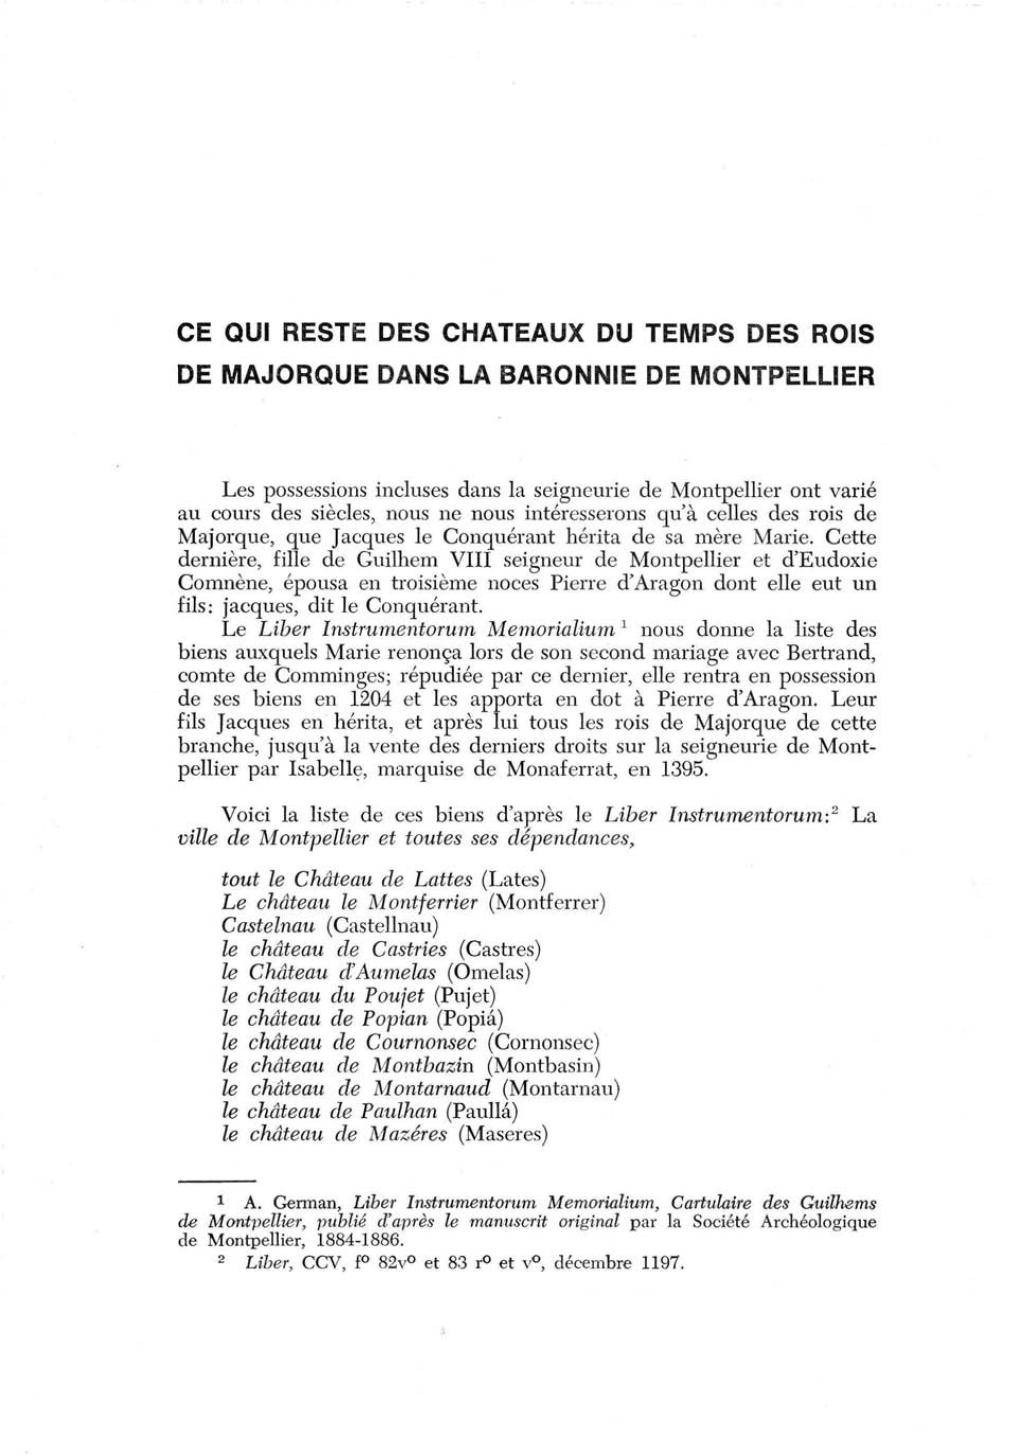 Ce Qui Reste Des Chateaux Du Temps Des Rois De Majorque Dans La Baronnie De Montpellier